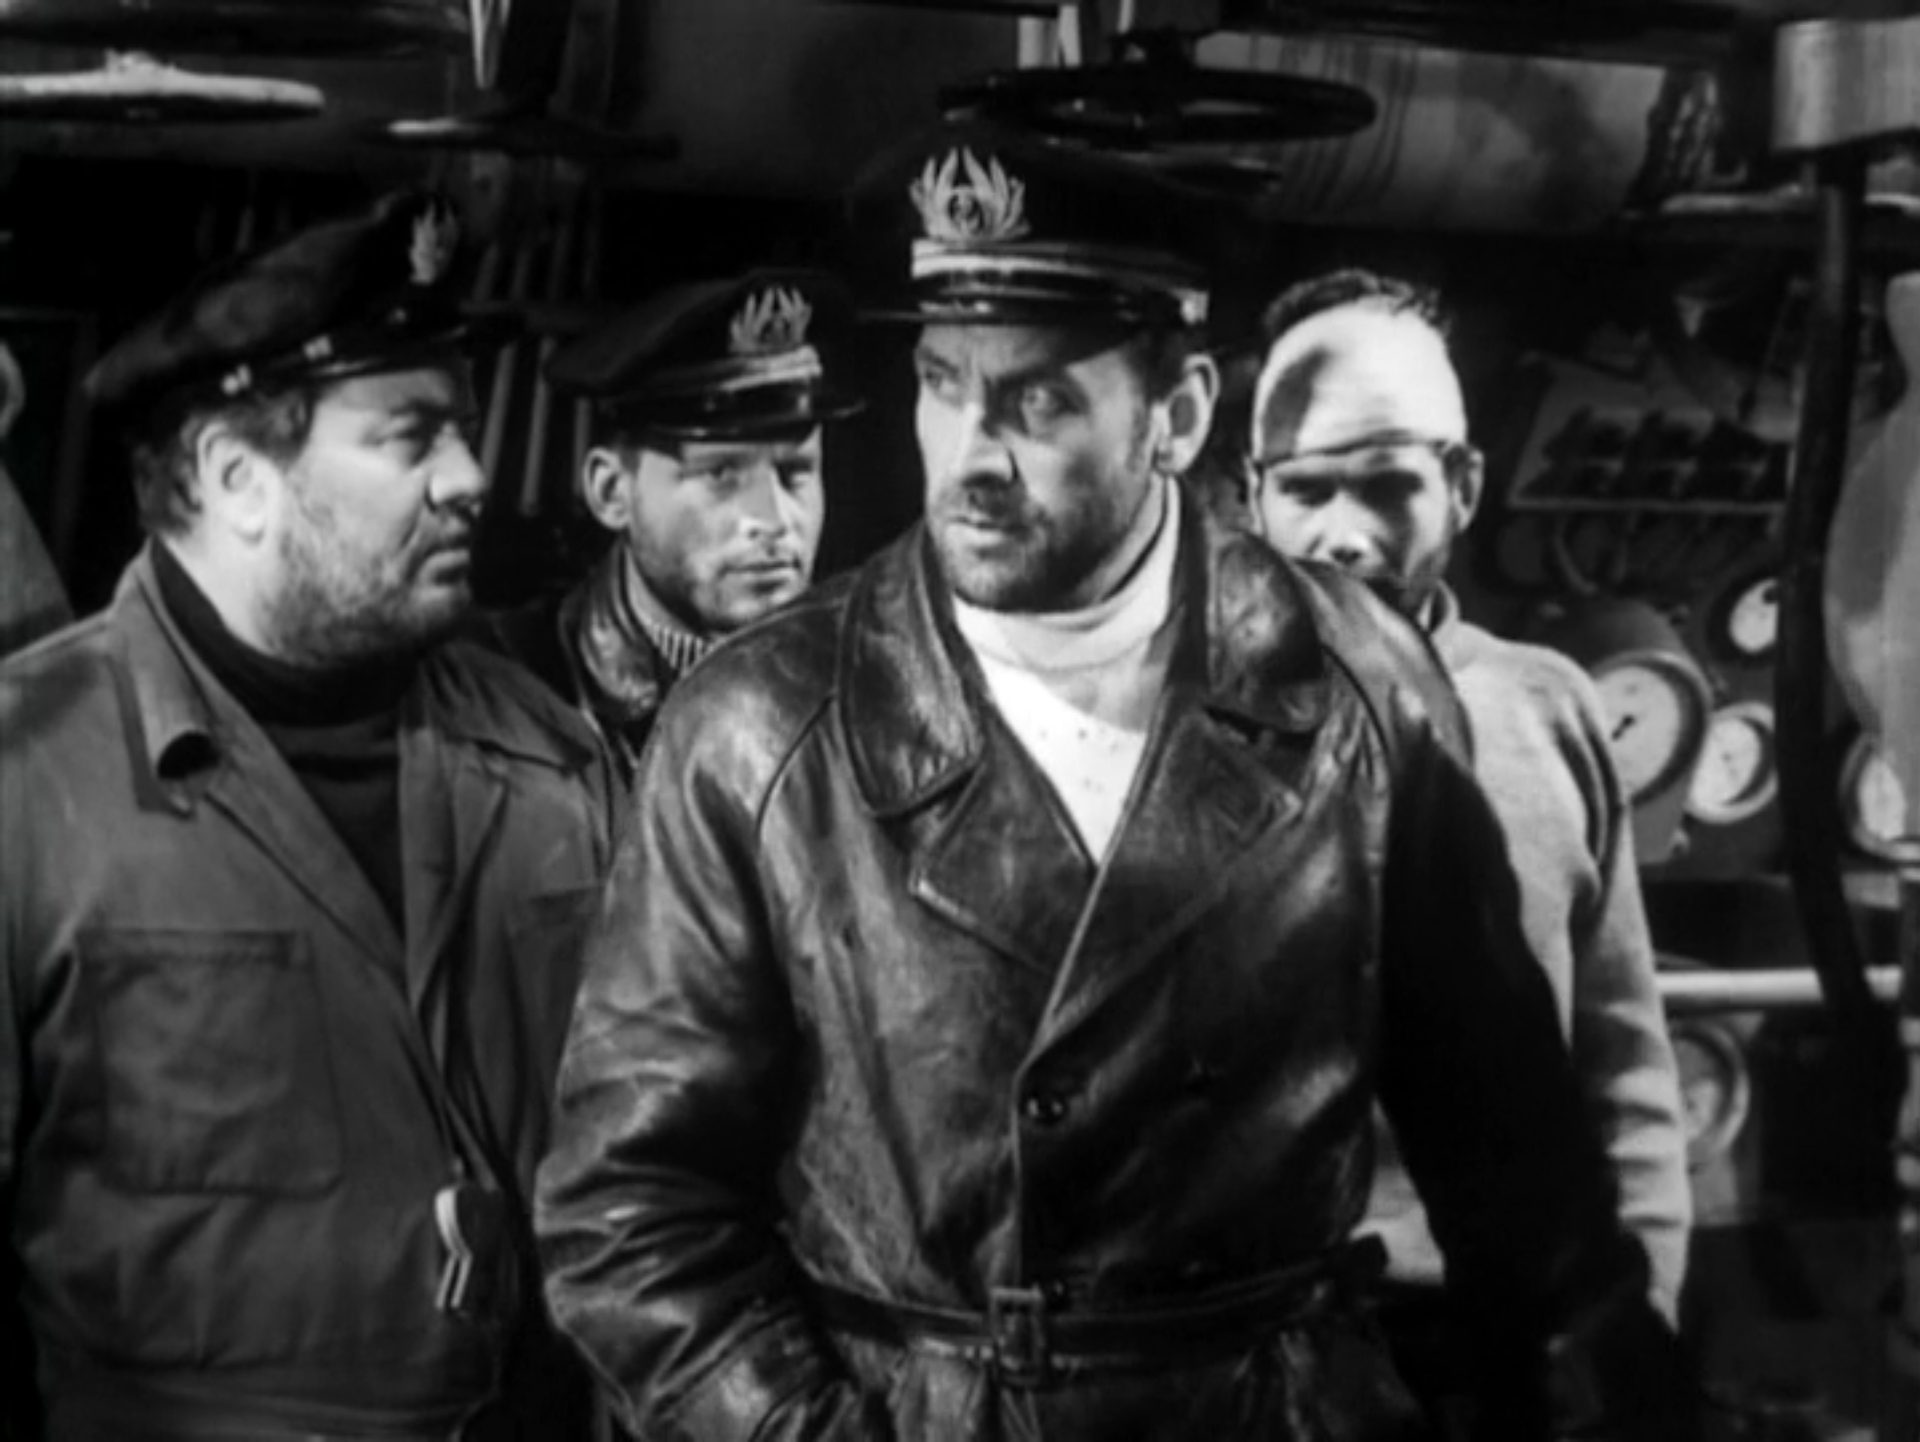 Schwarz-Weiß-Szene der im untergegangenen U-Boot eingepferchten Seeleute; der im Ledermantel gekleidete Kapitän blickt skeptisch zur Seite, einer der Seemänner trägt einen weißen Kopfverband.